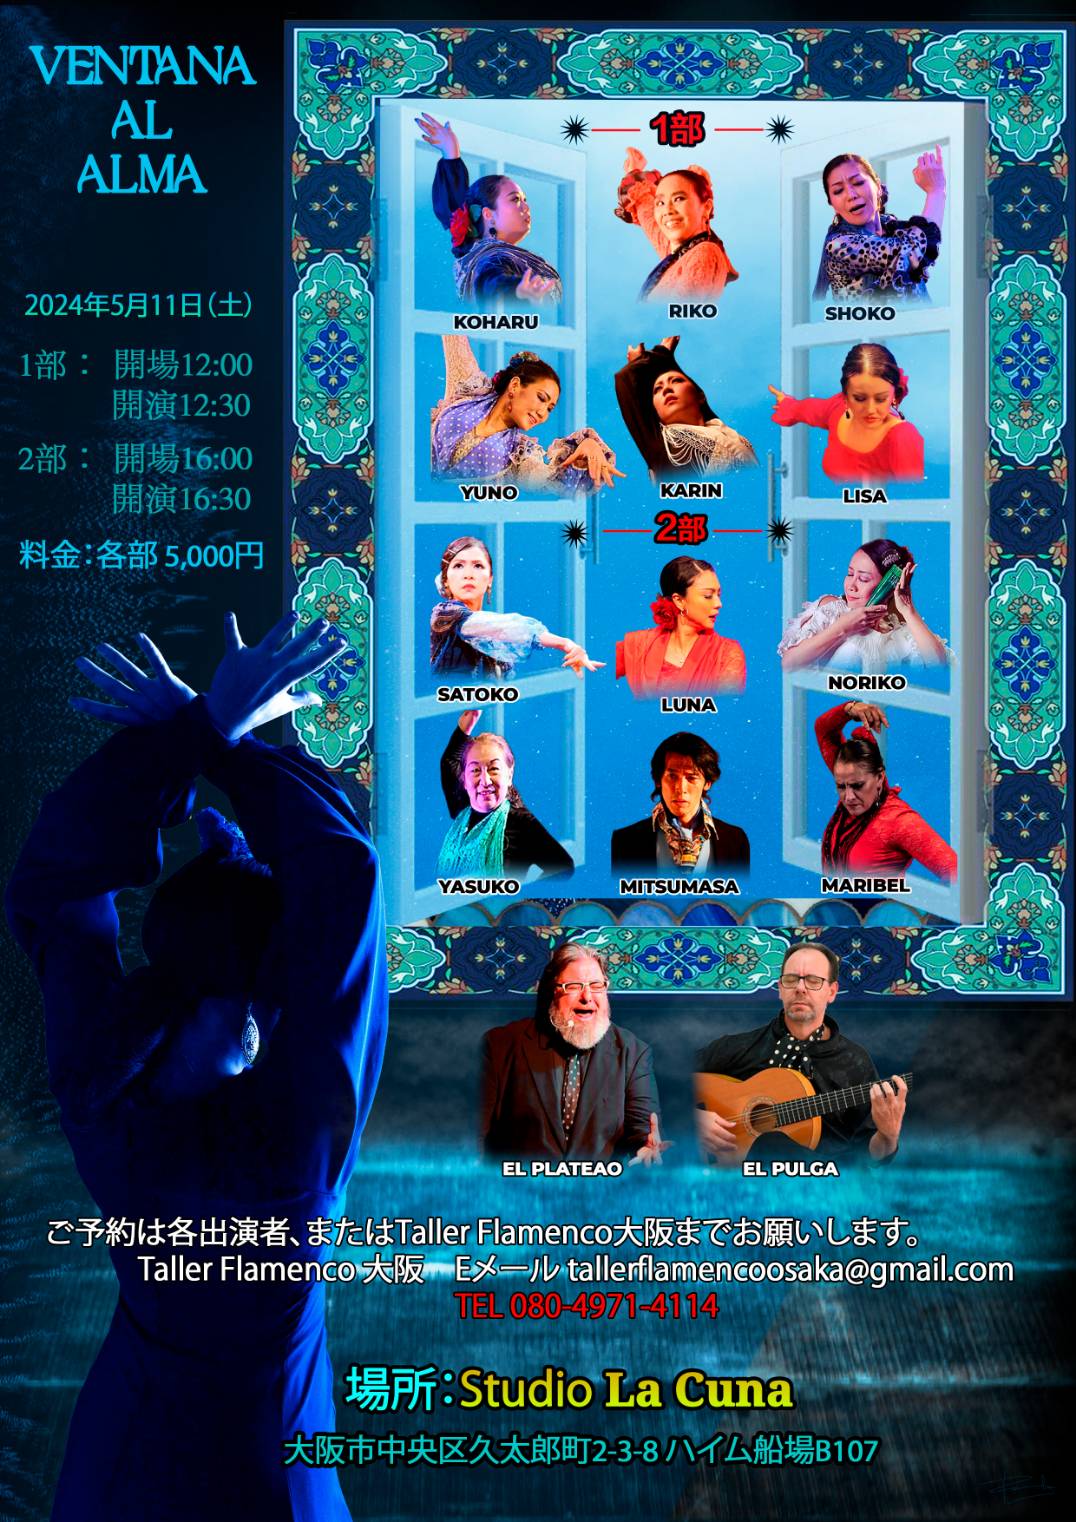 2024年5月11日(土)Flamenco Live VENTANA AL ALMA　開催